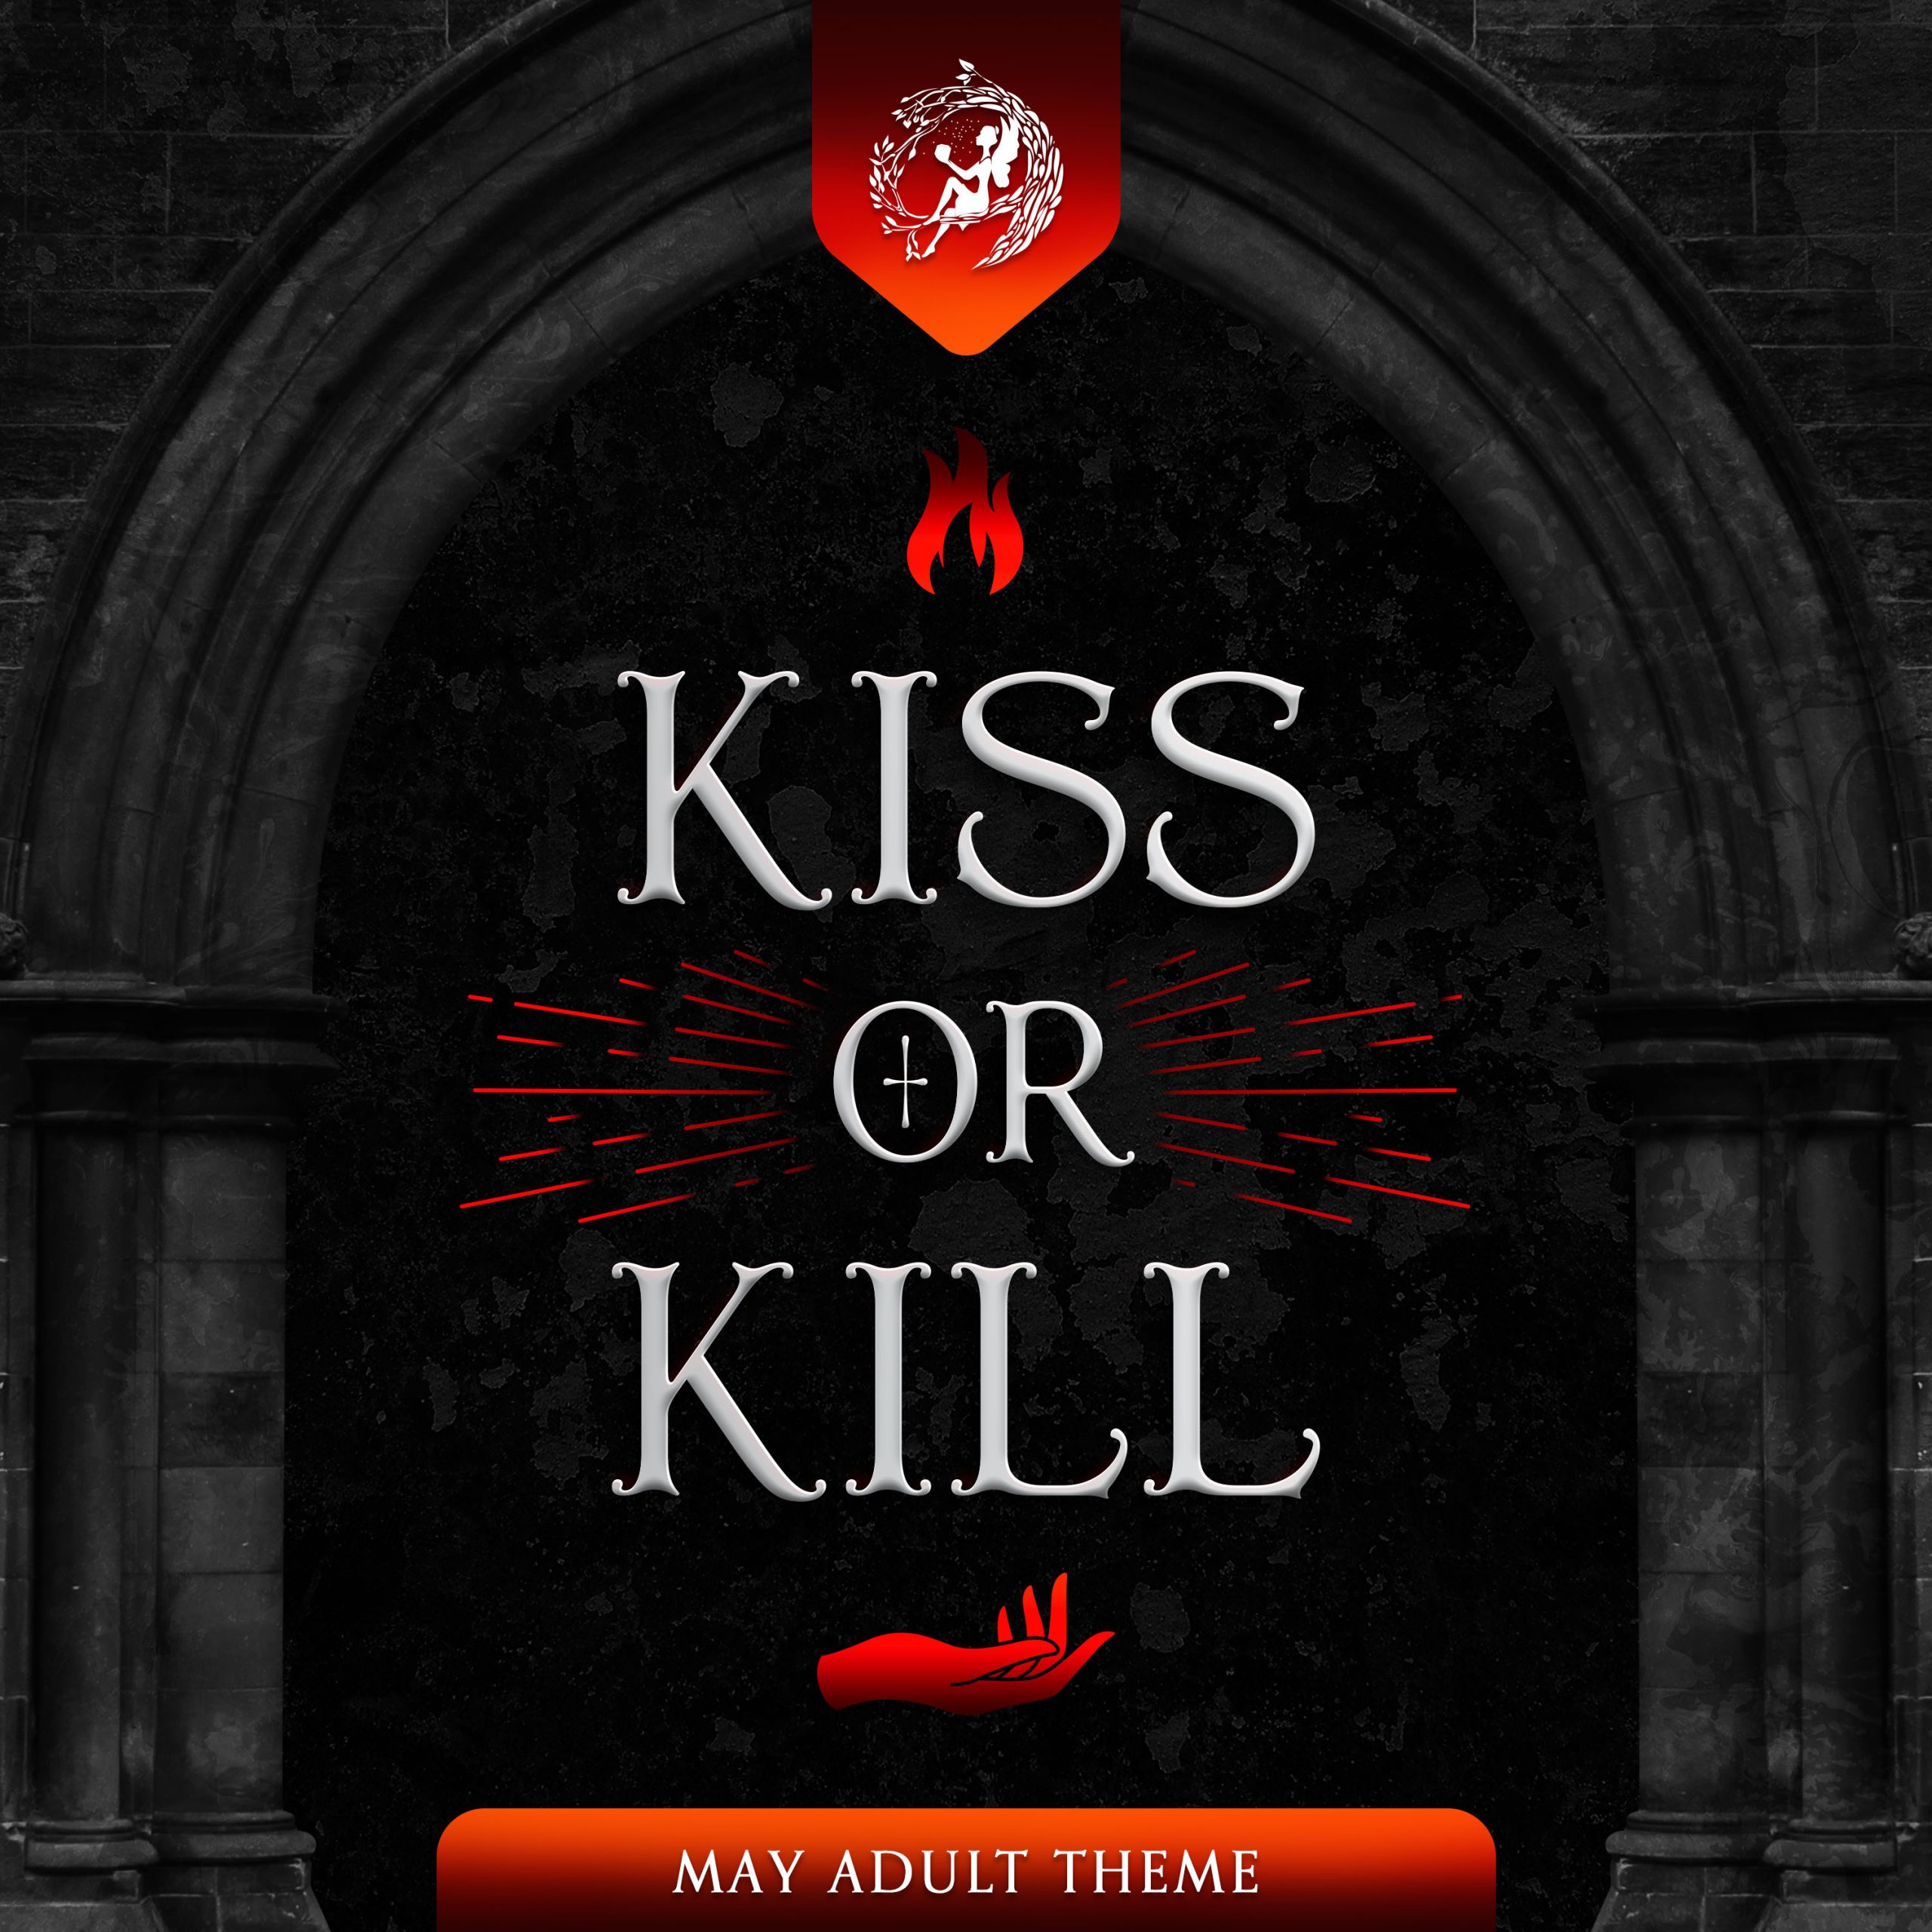 May Adult Theme: KISS OR KILL